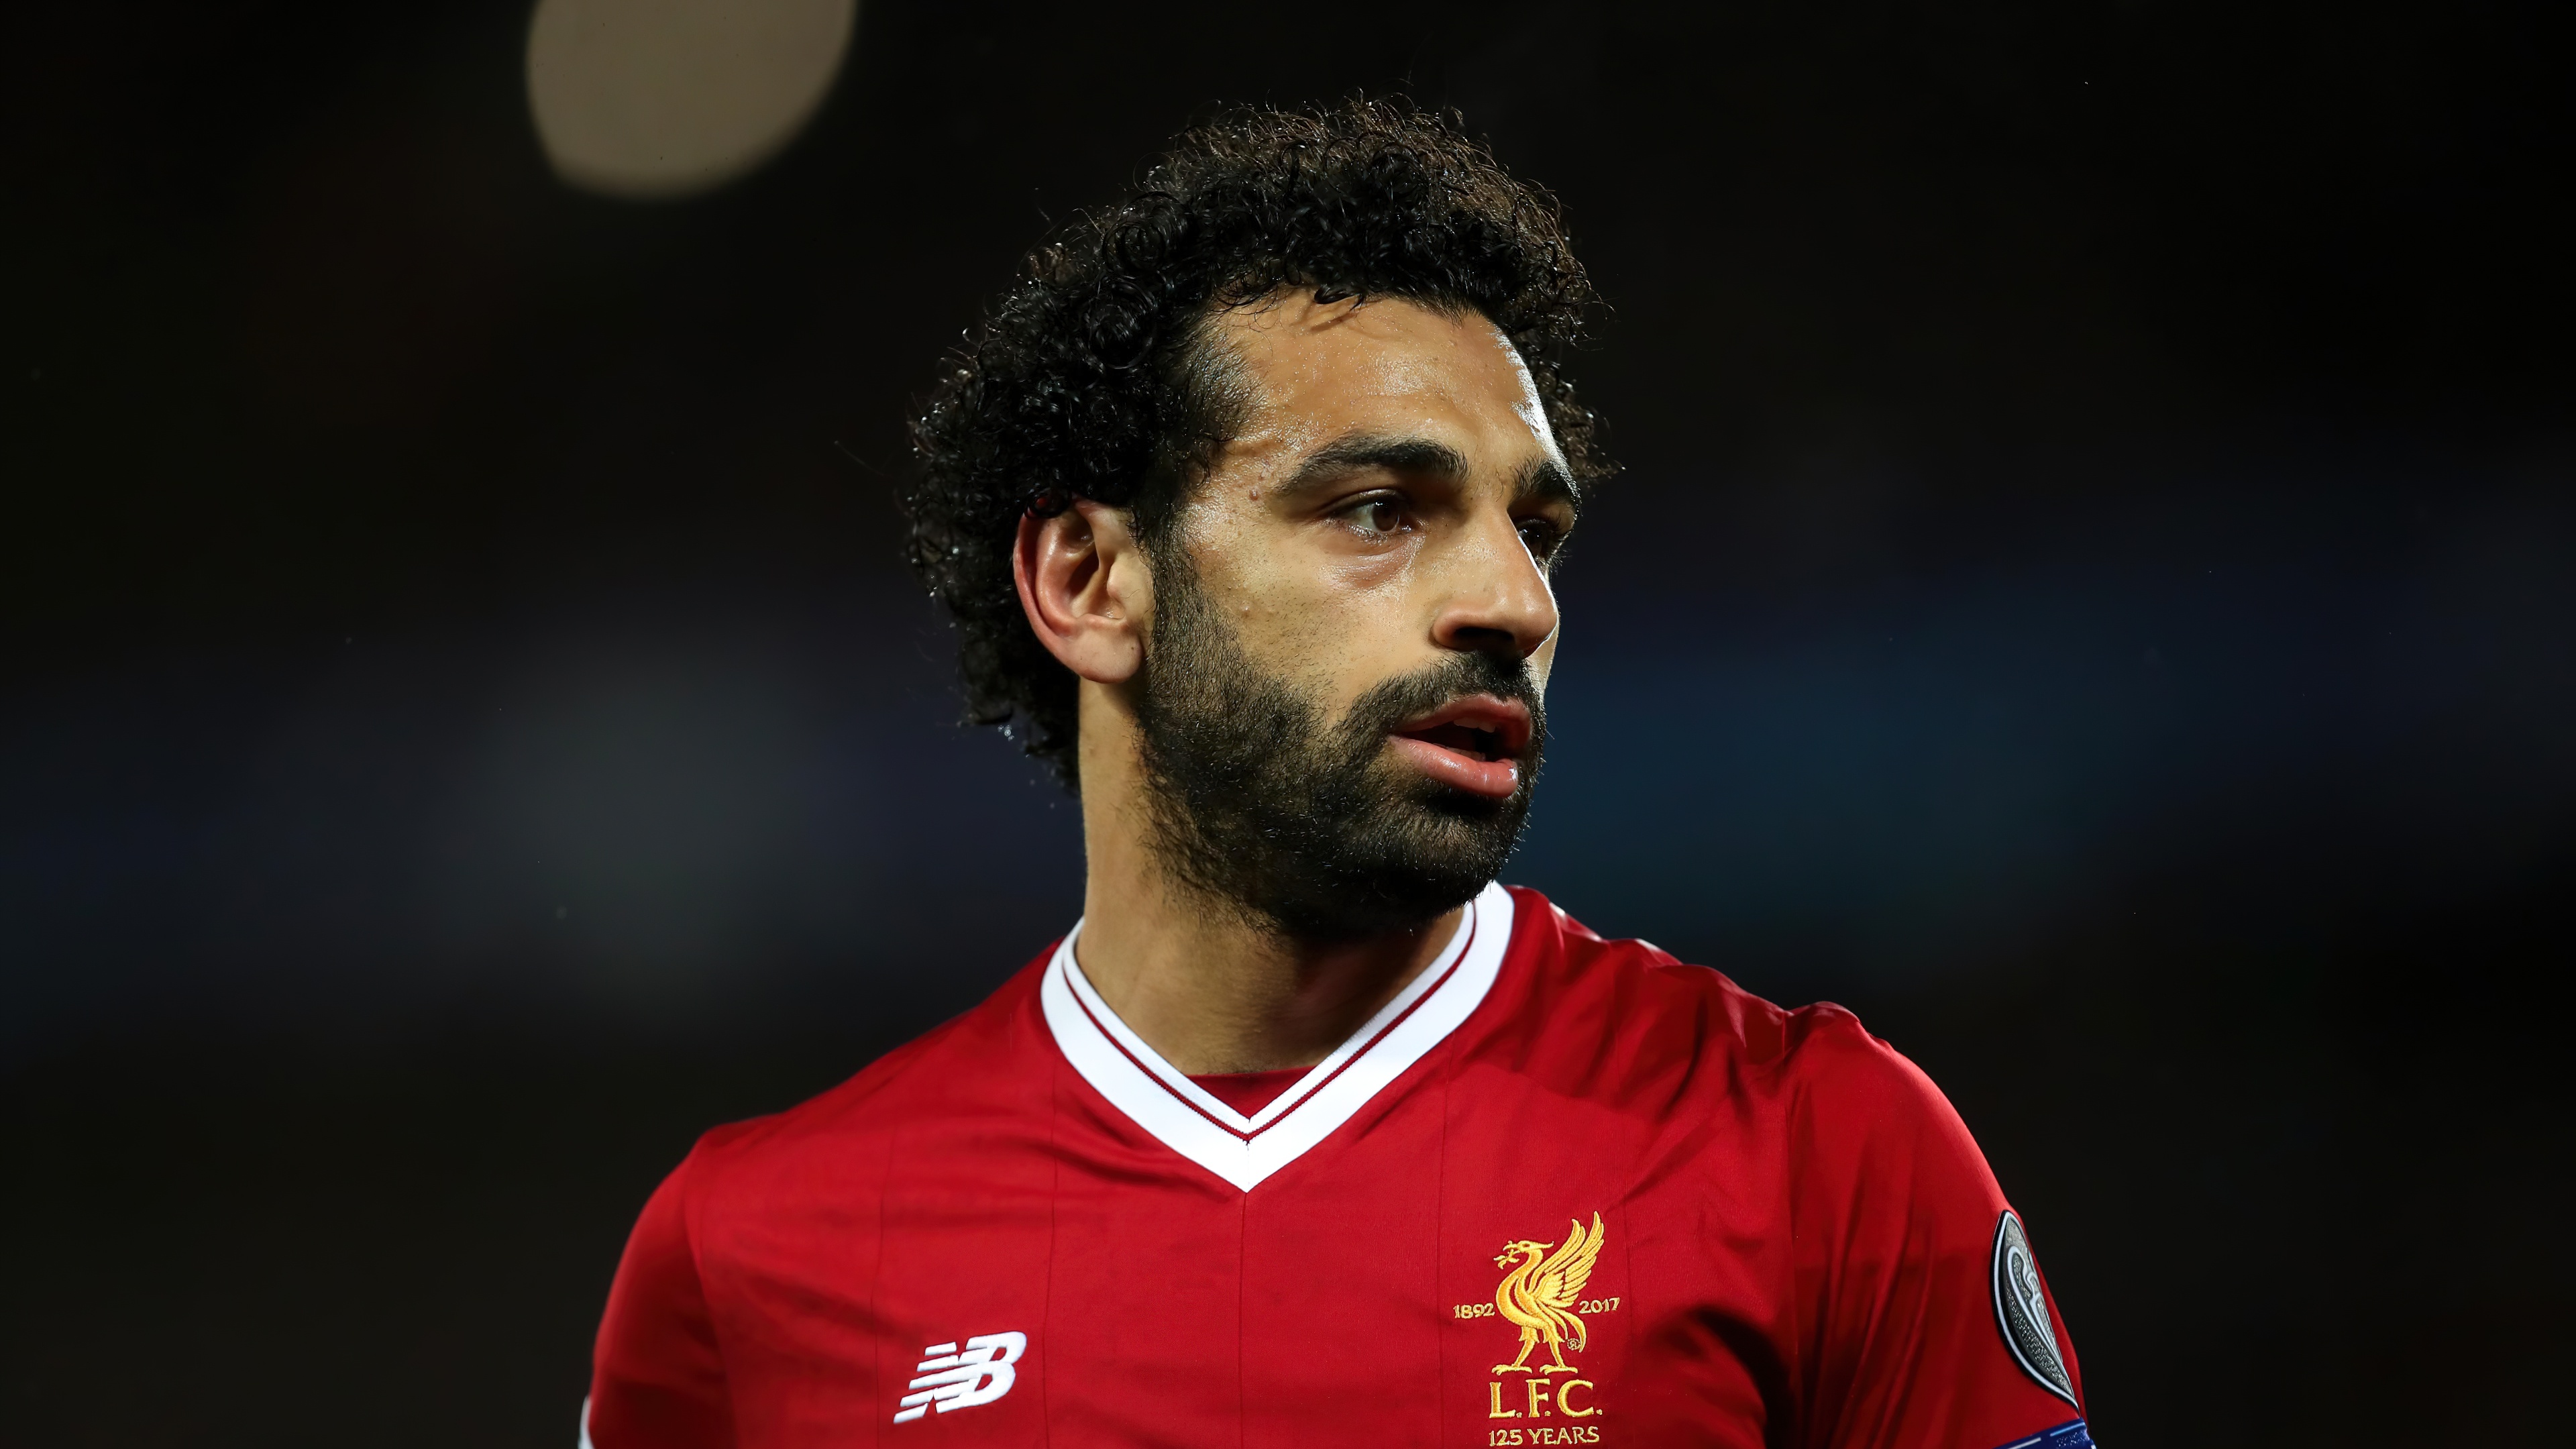 Mohamed Salah Wallpaper 4K, Egyptian, Football Player, Liverpool, Sports